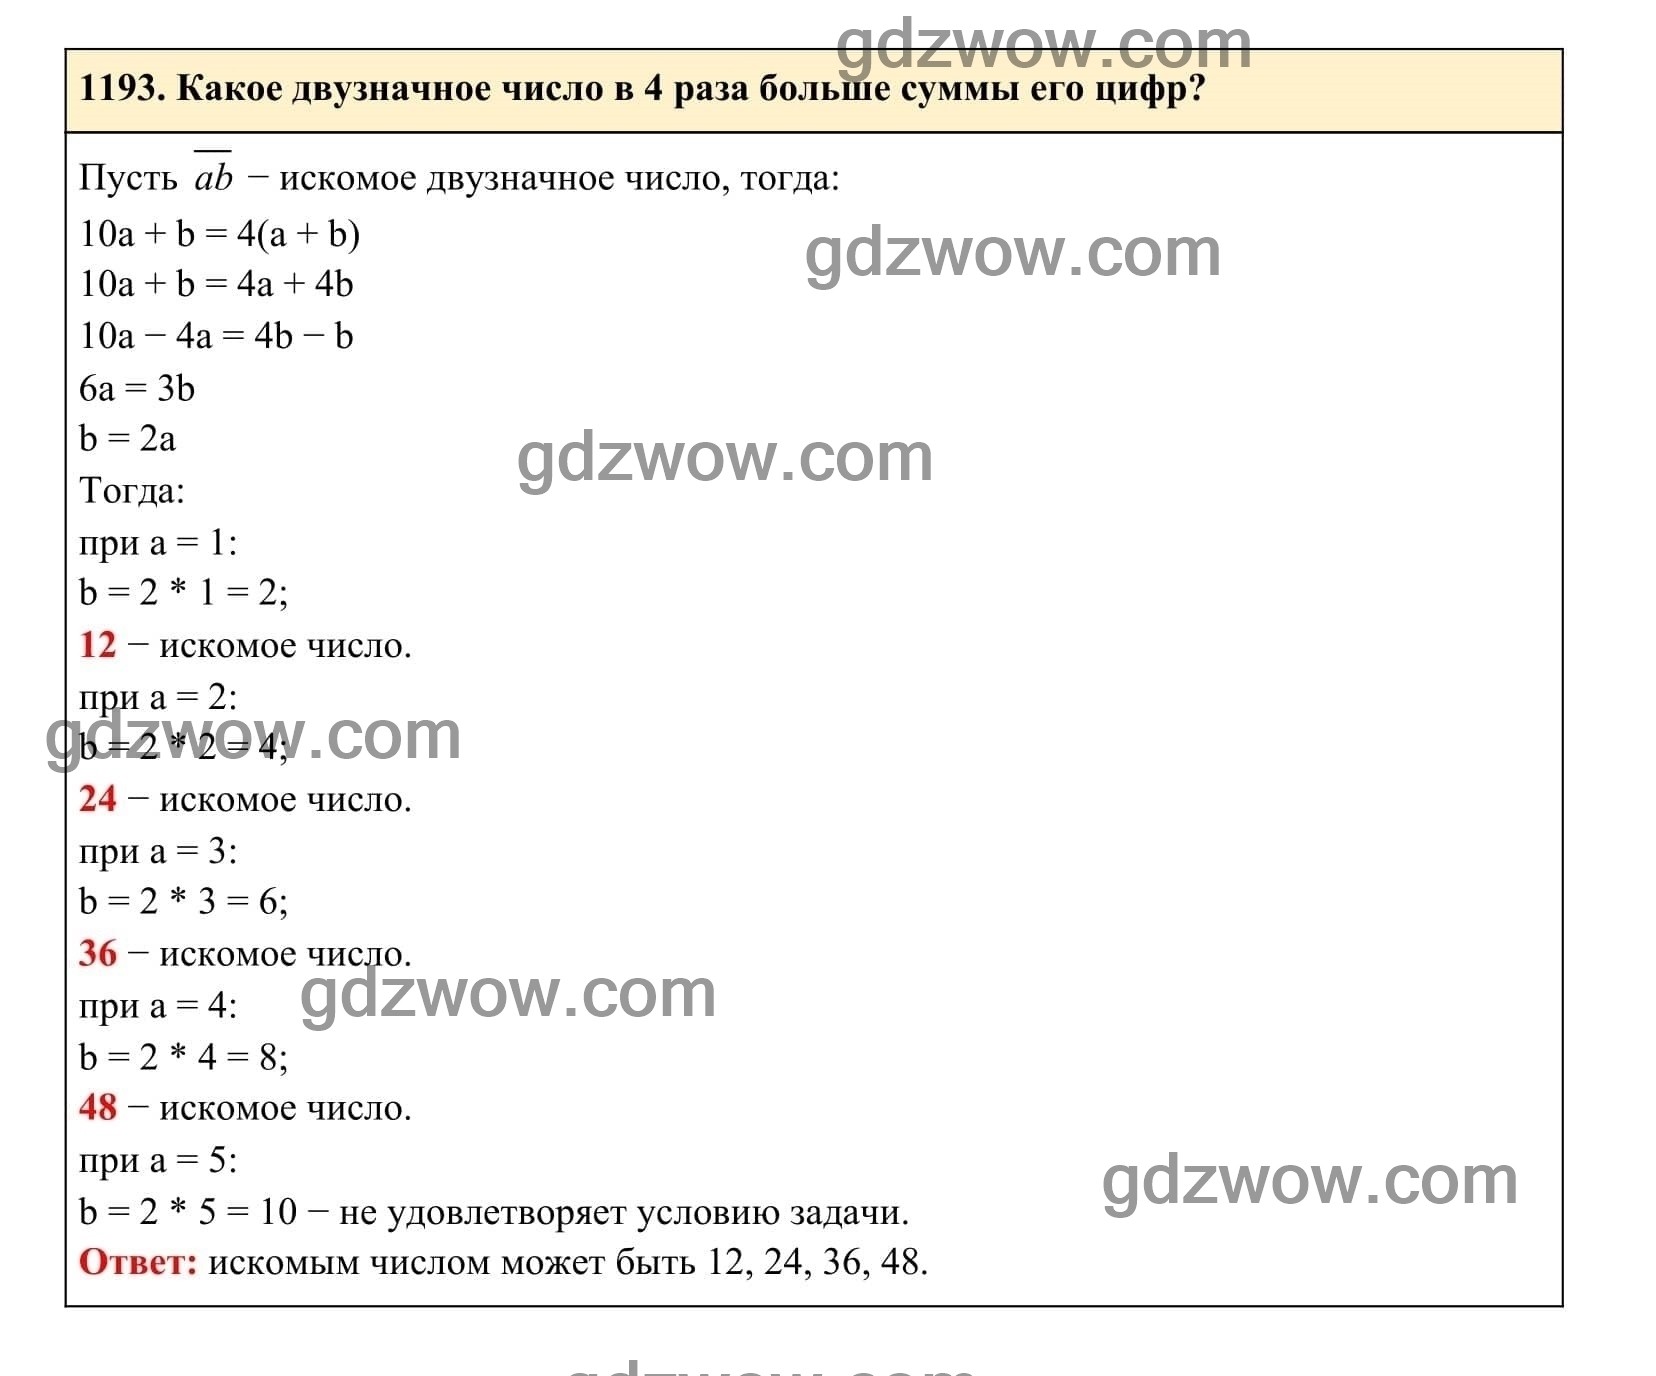 Упражнение 1193 - ГДЗ по Алгебре 7 класс Учебник Макарычев (решебник) - GDZwow